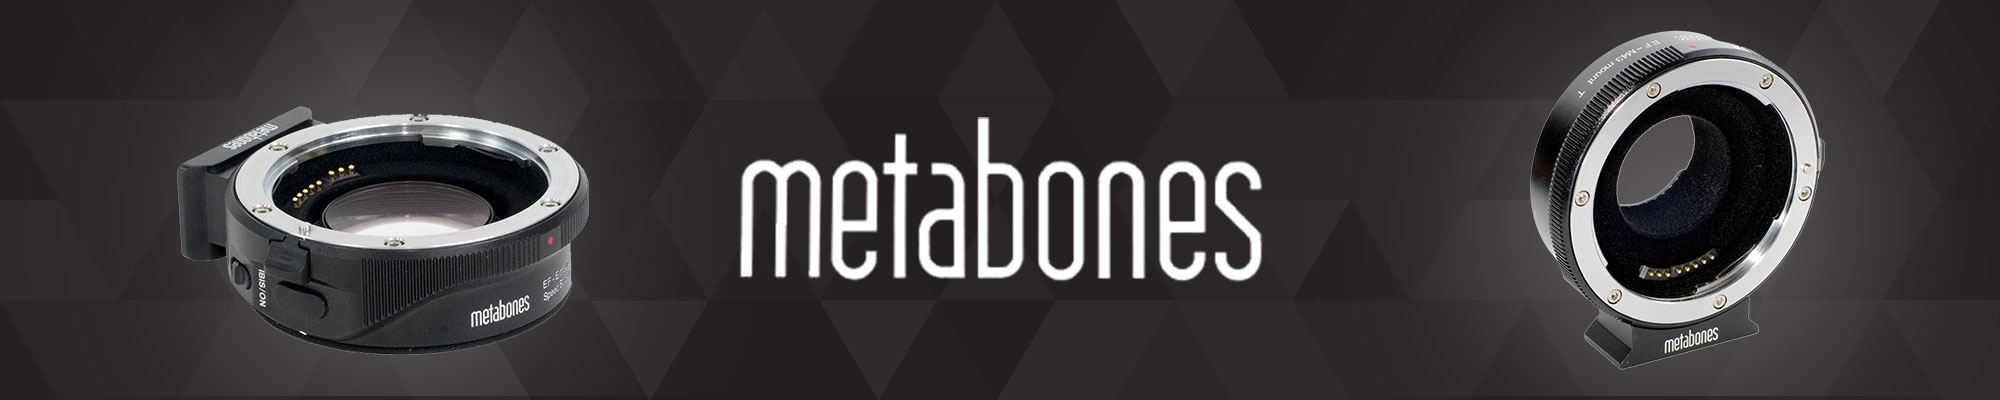 Metabones-3.jpg